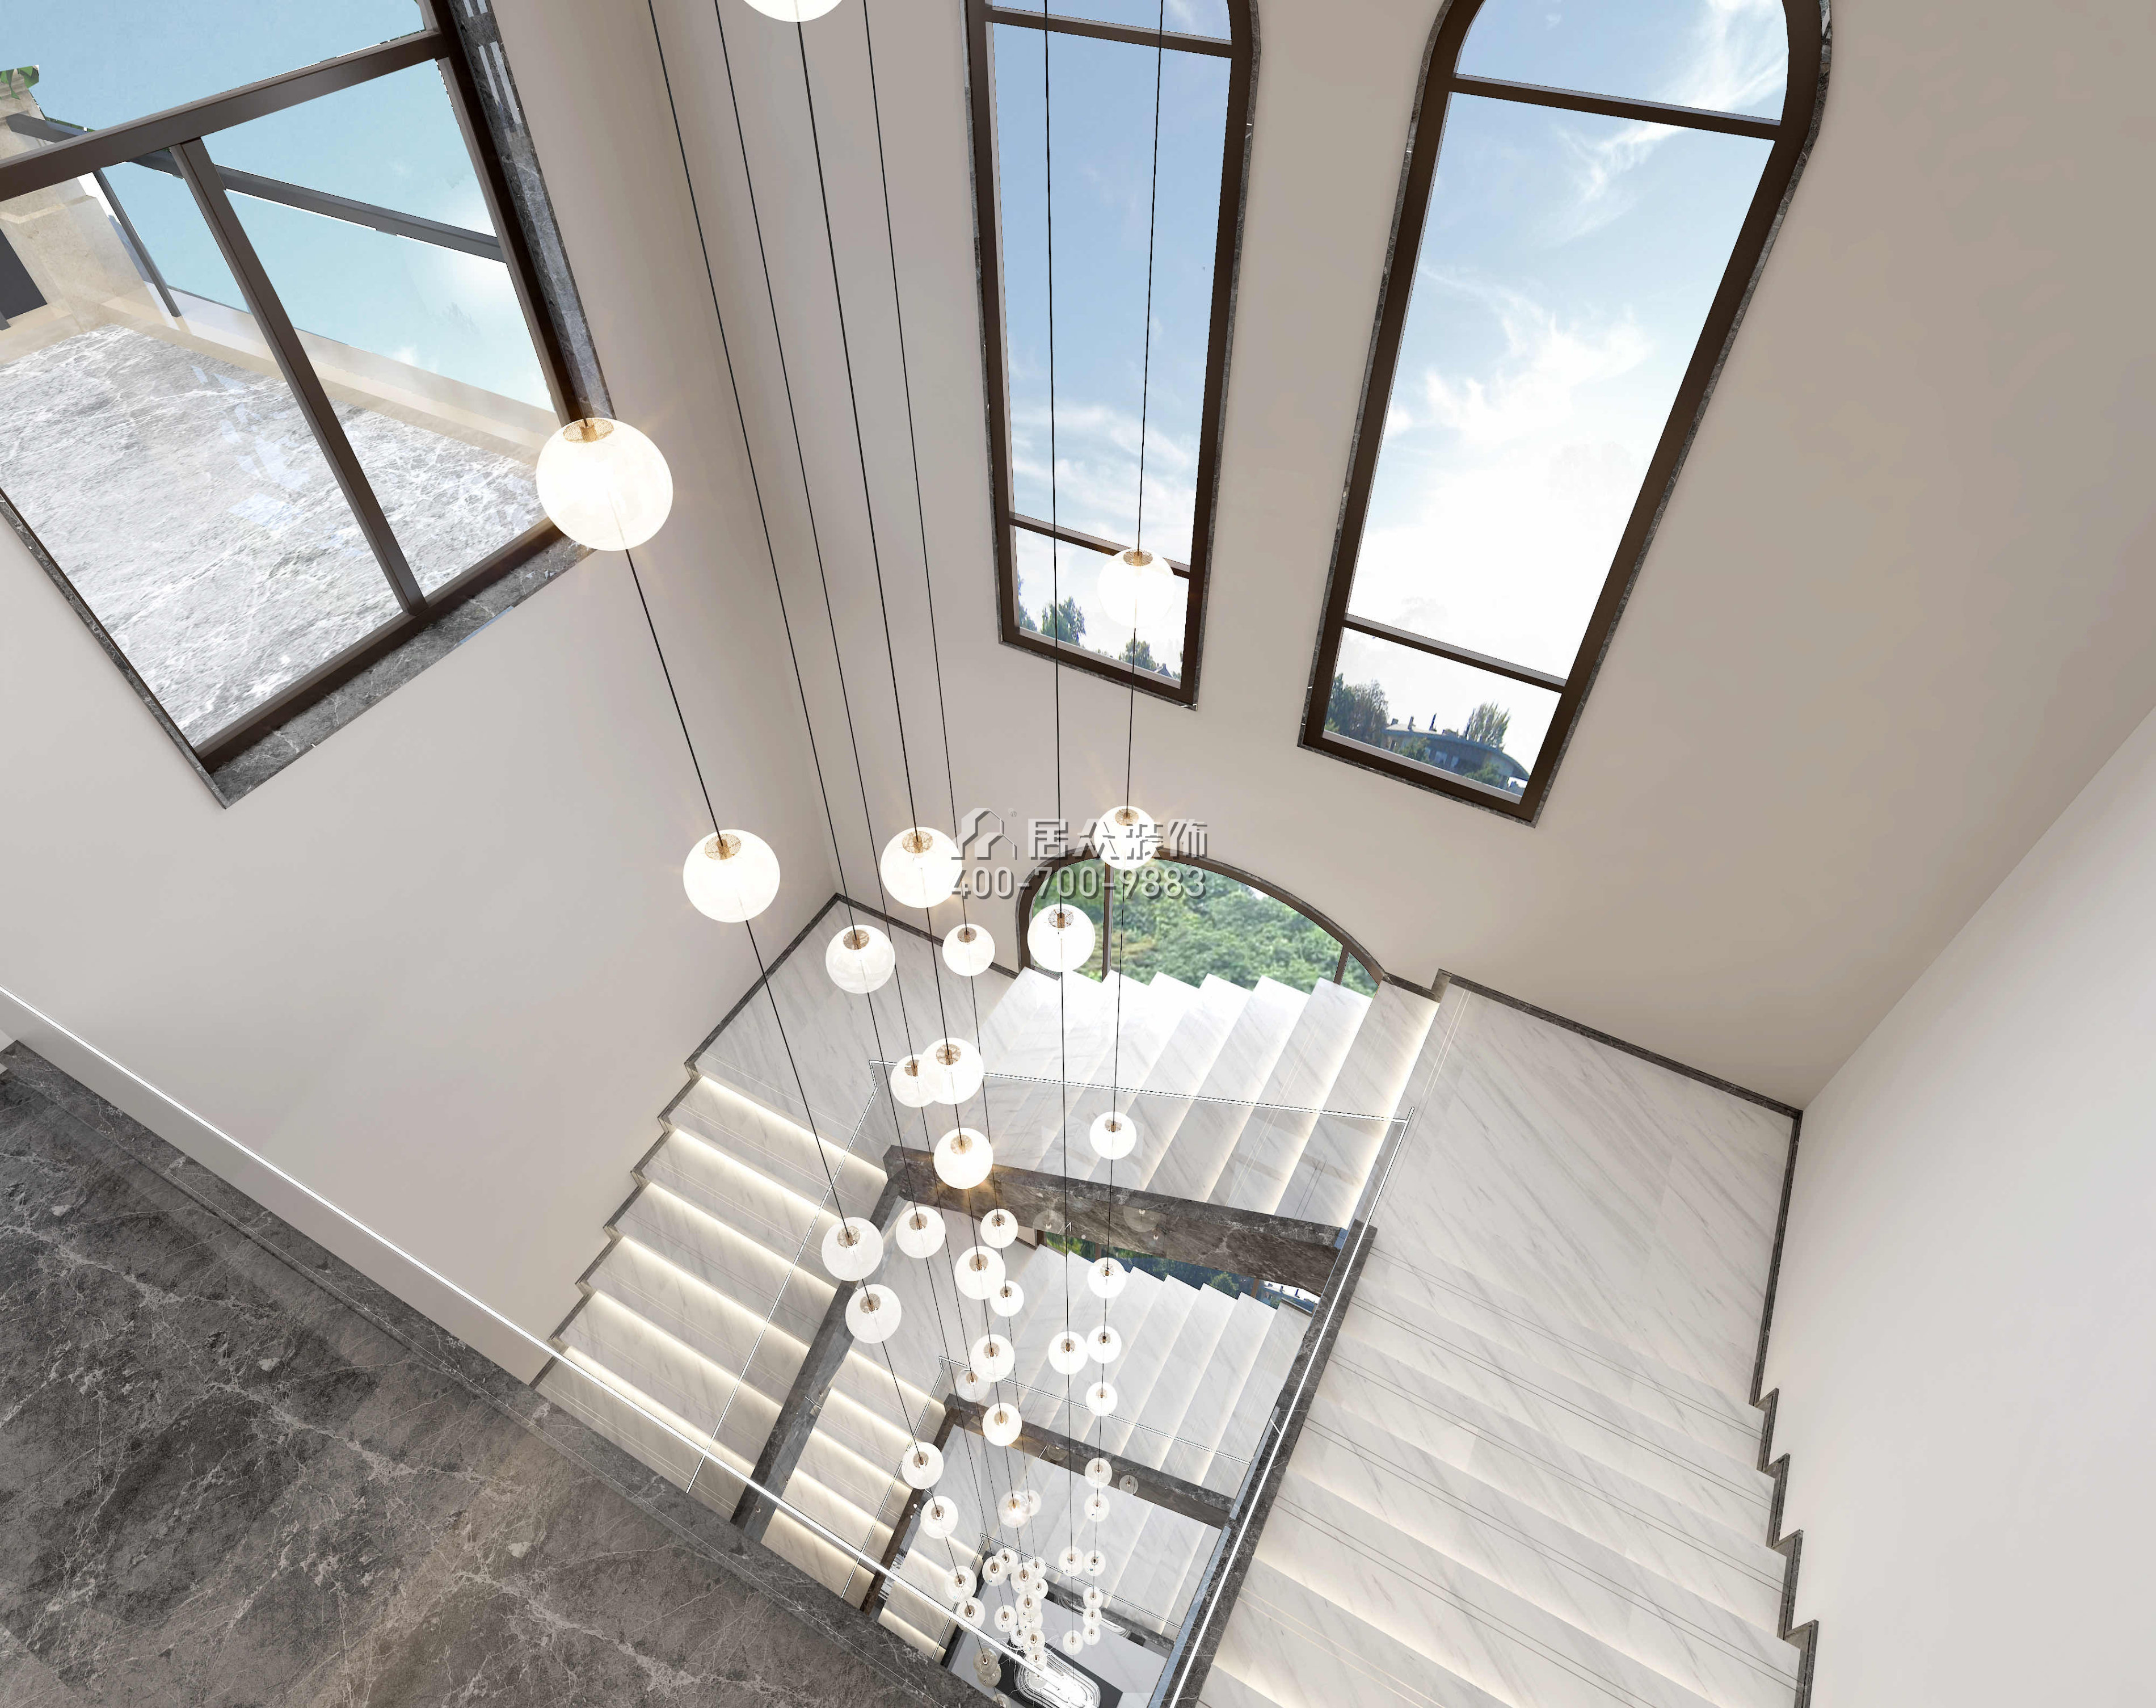 观园800平方米现代简约风格别墅户型楼梯装修效果图